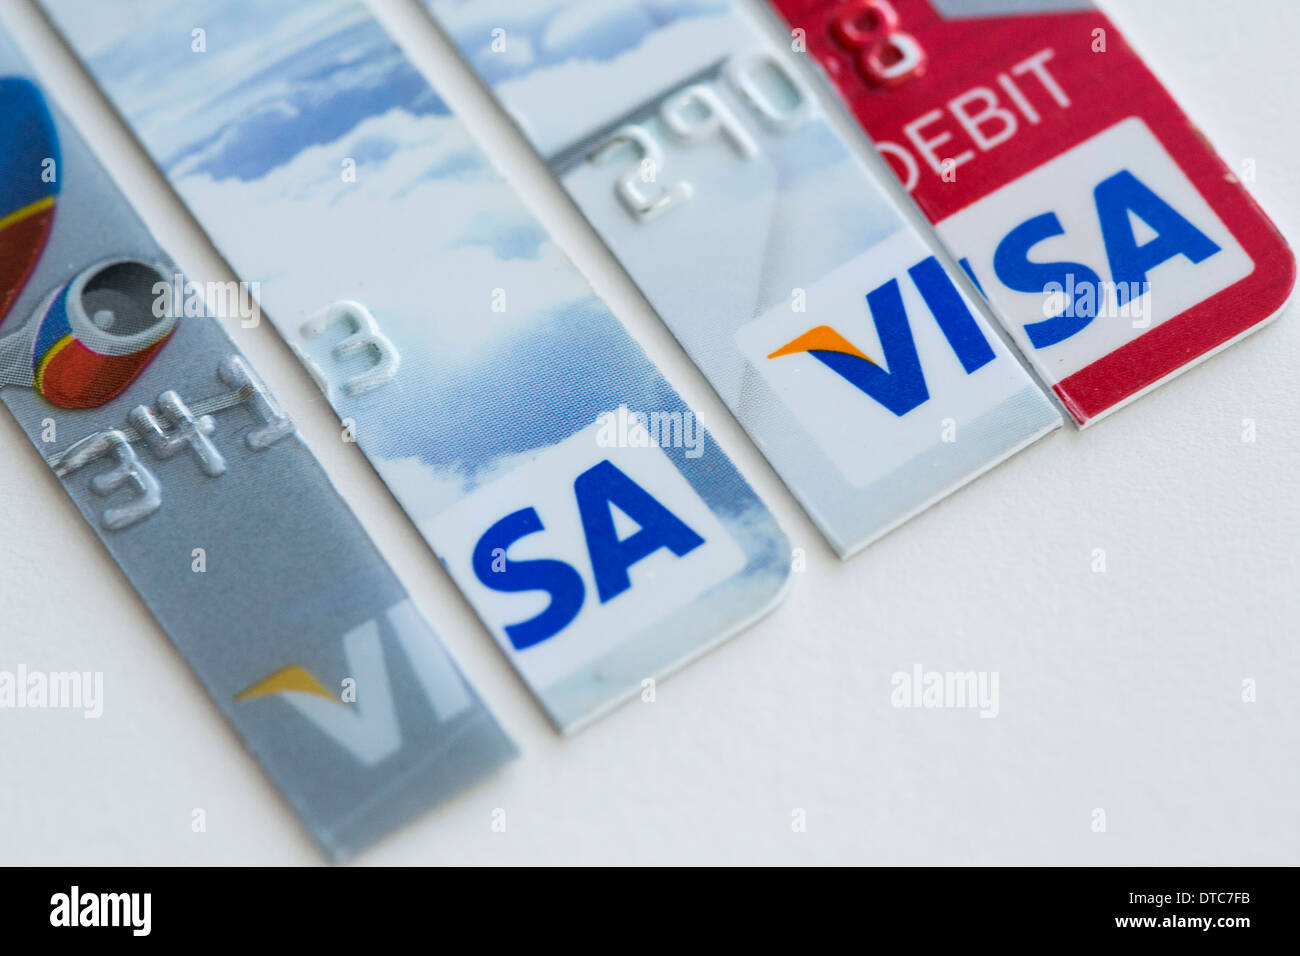 Fotos von verschiedenen US-Kreditkarten von Visa, MasterCard und American Express angeordnet Stockfoto